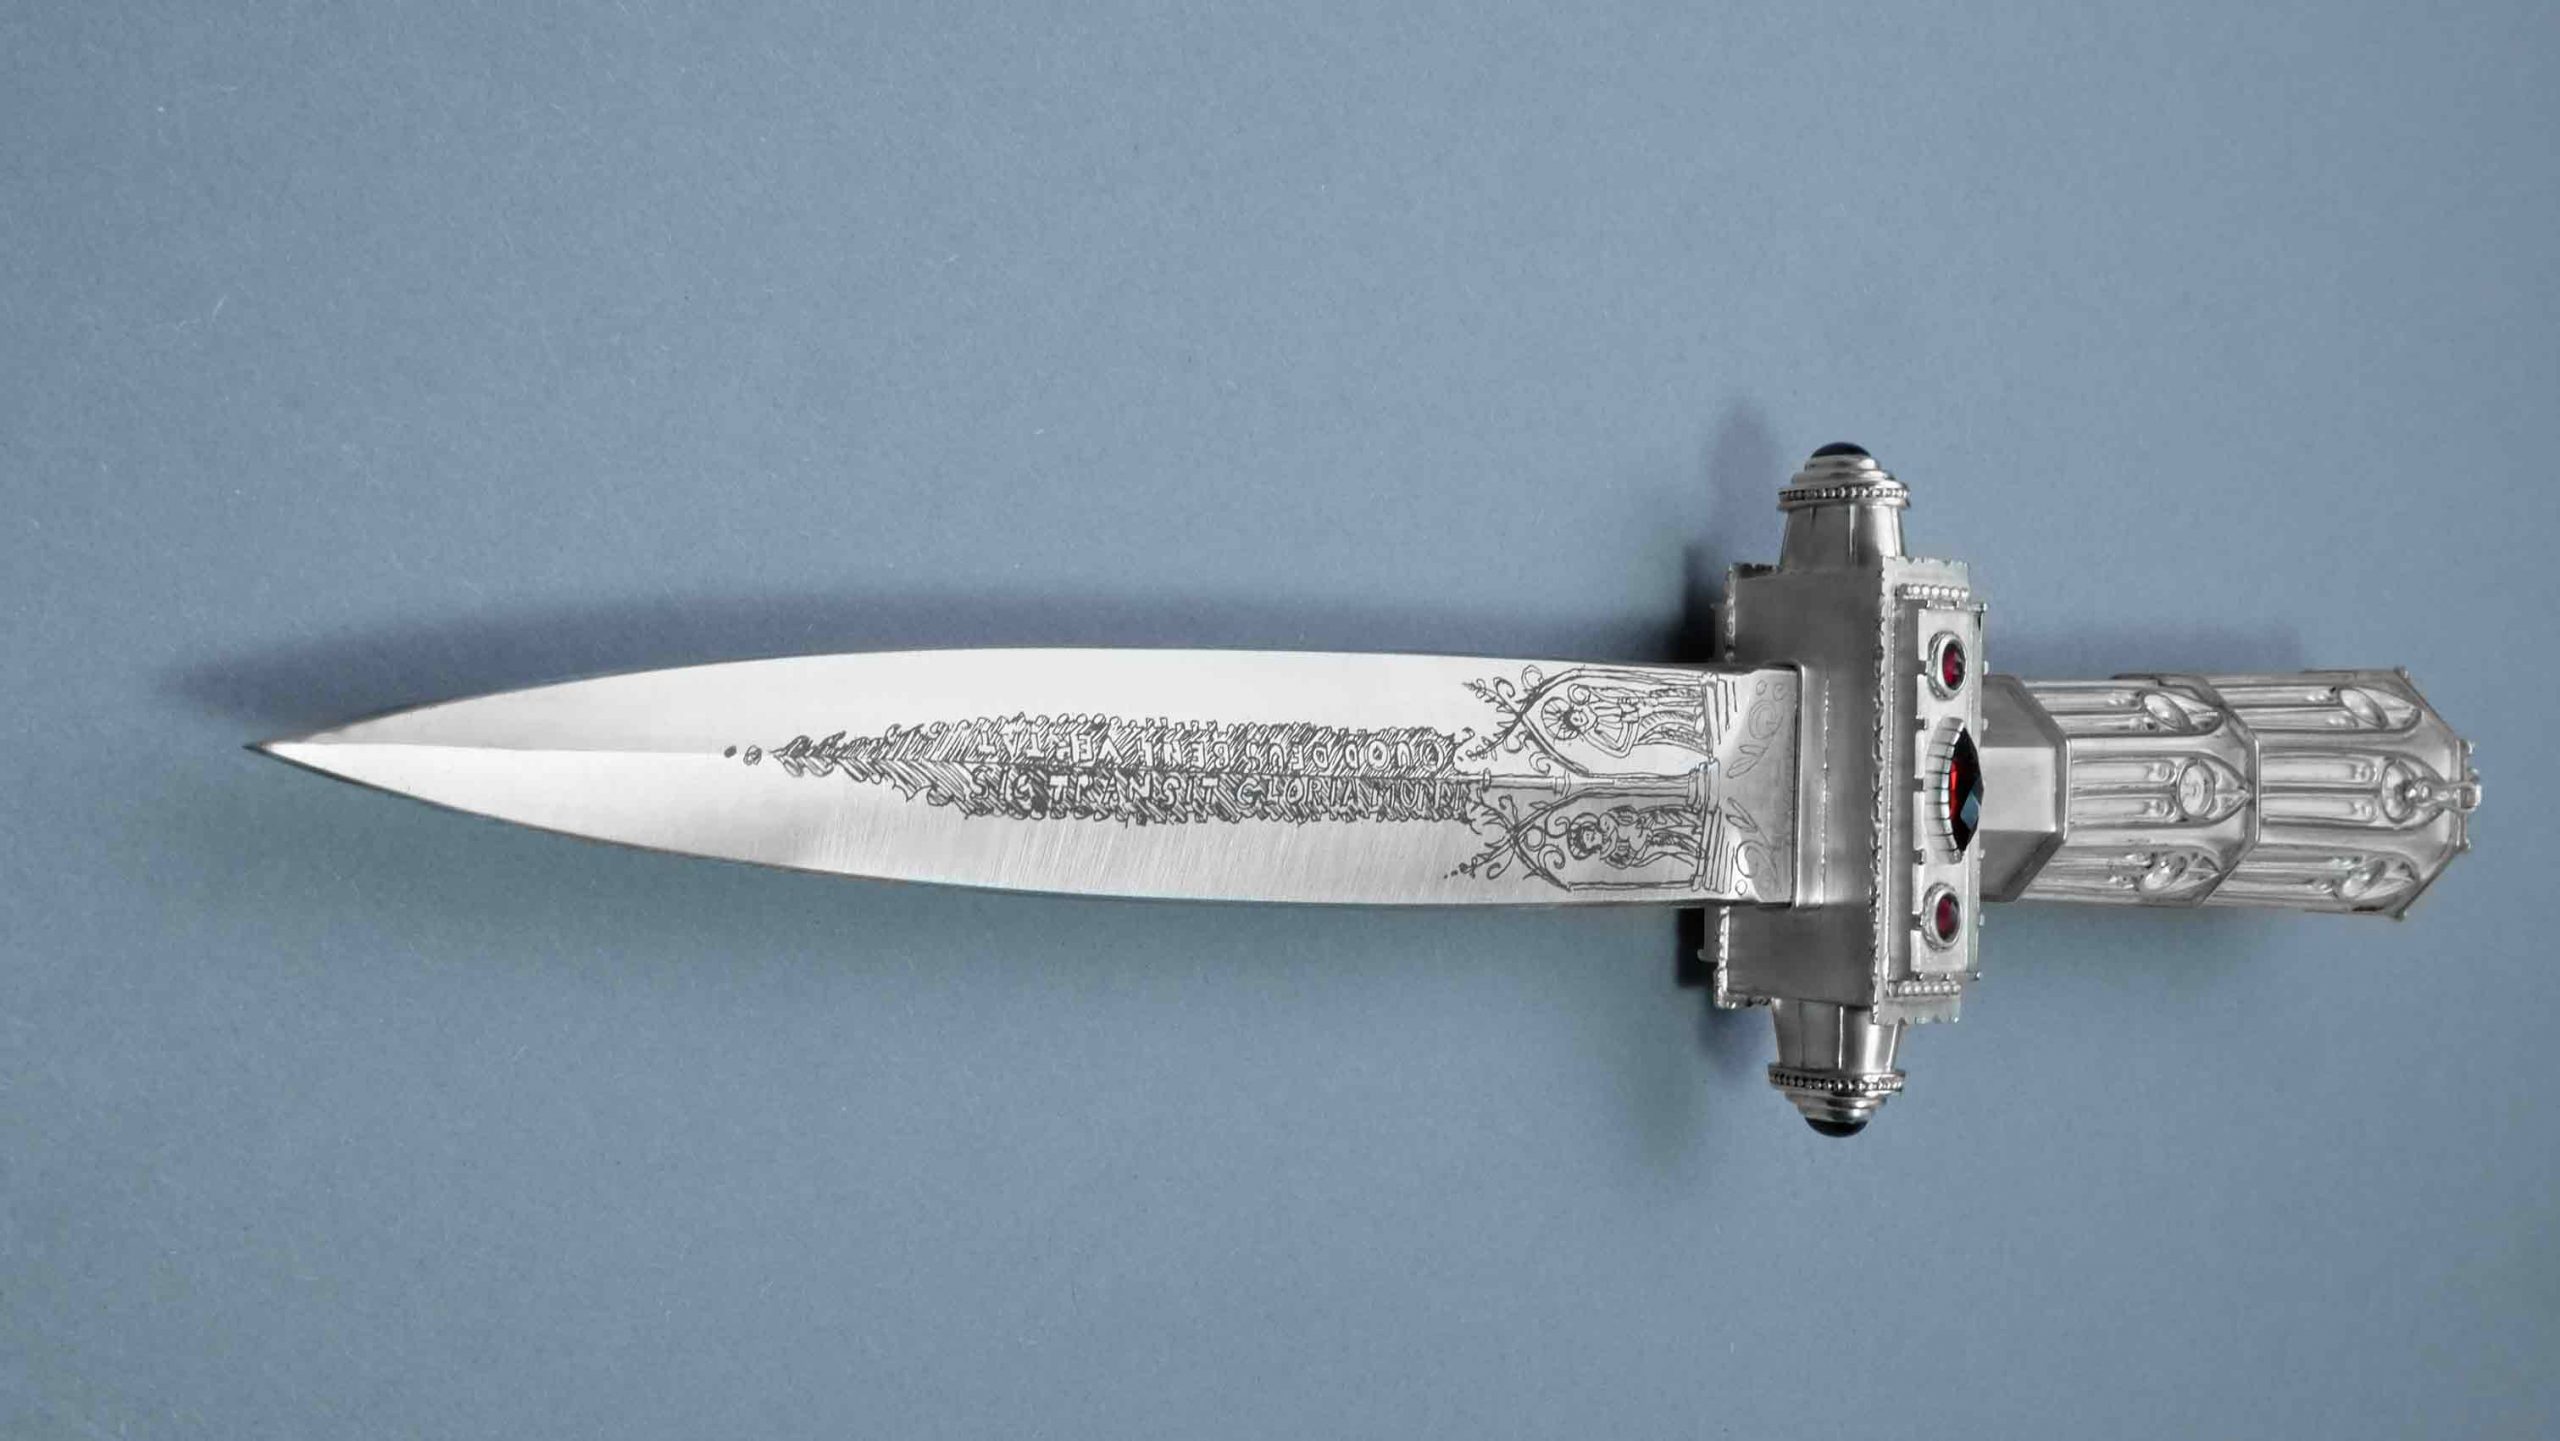 Quasimodo Gothic knife art